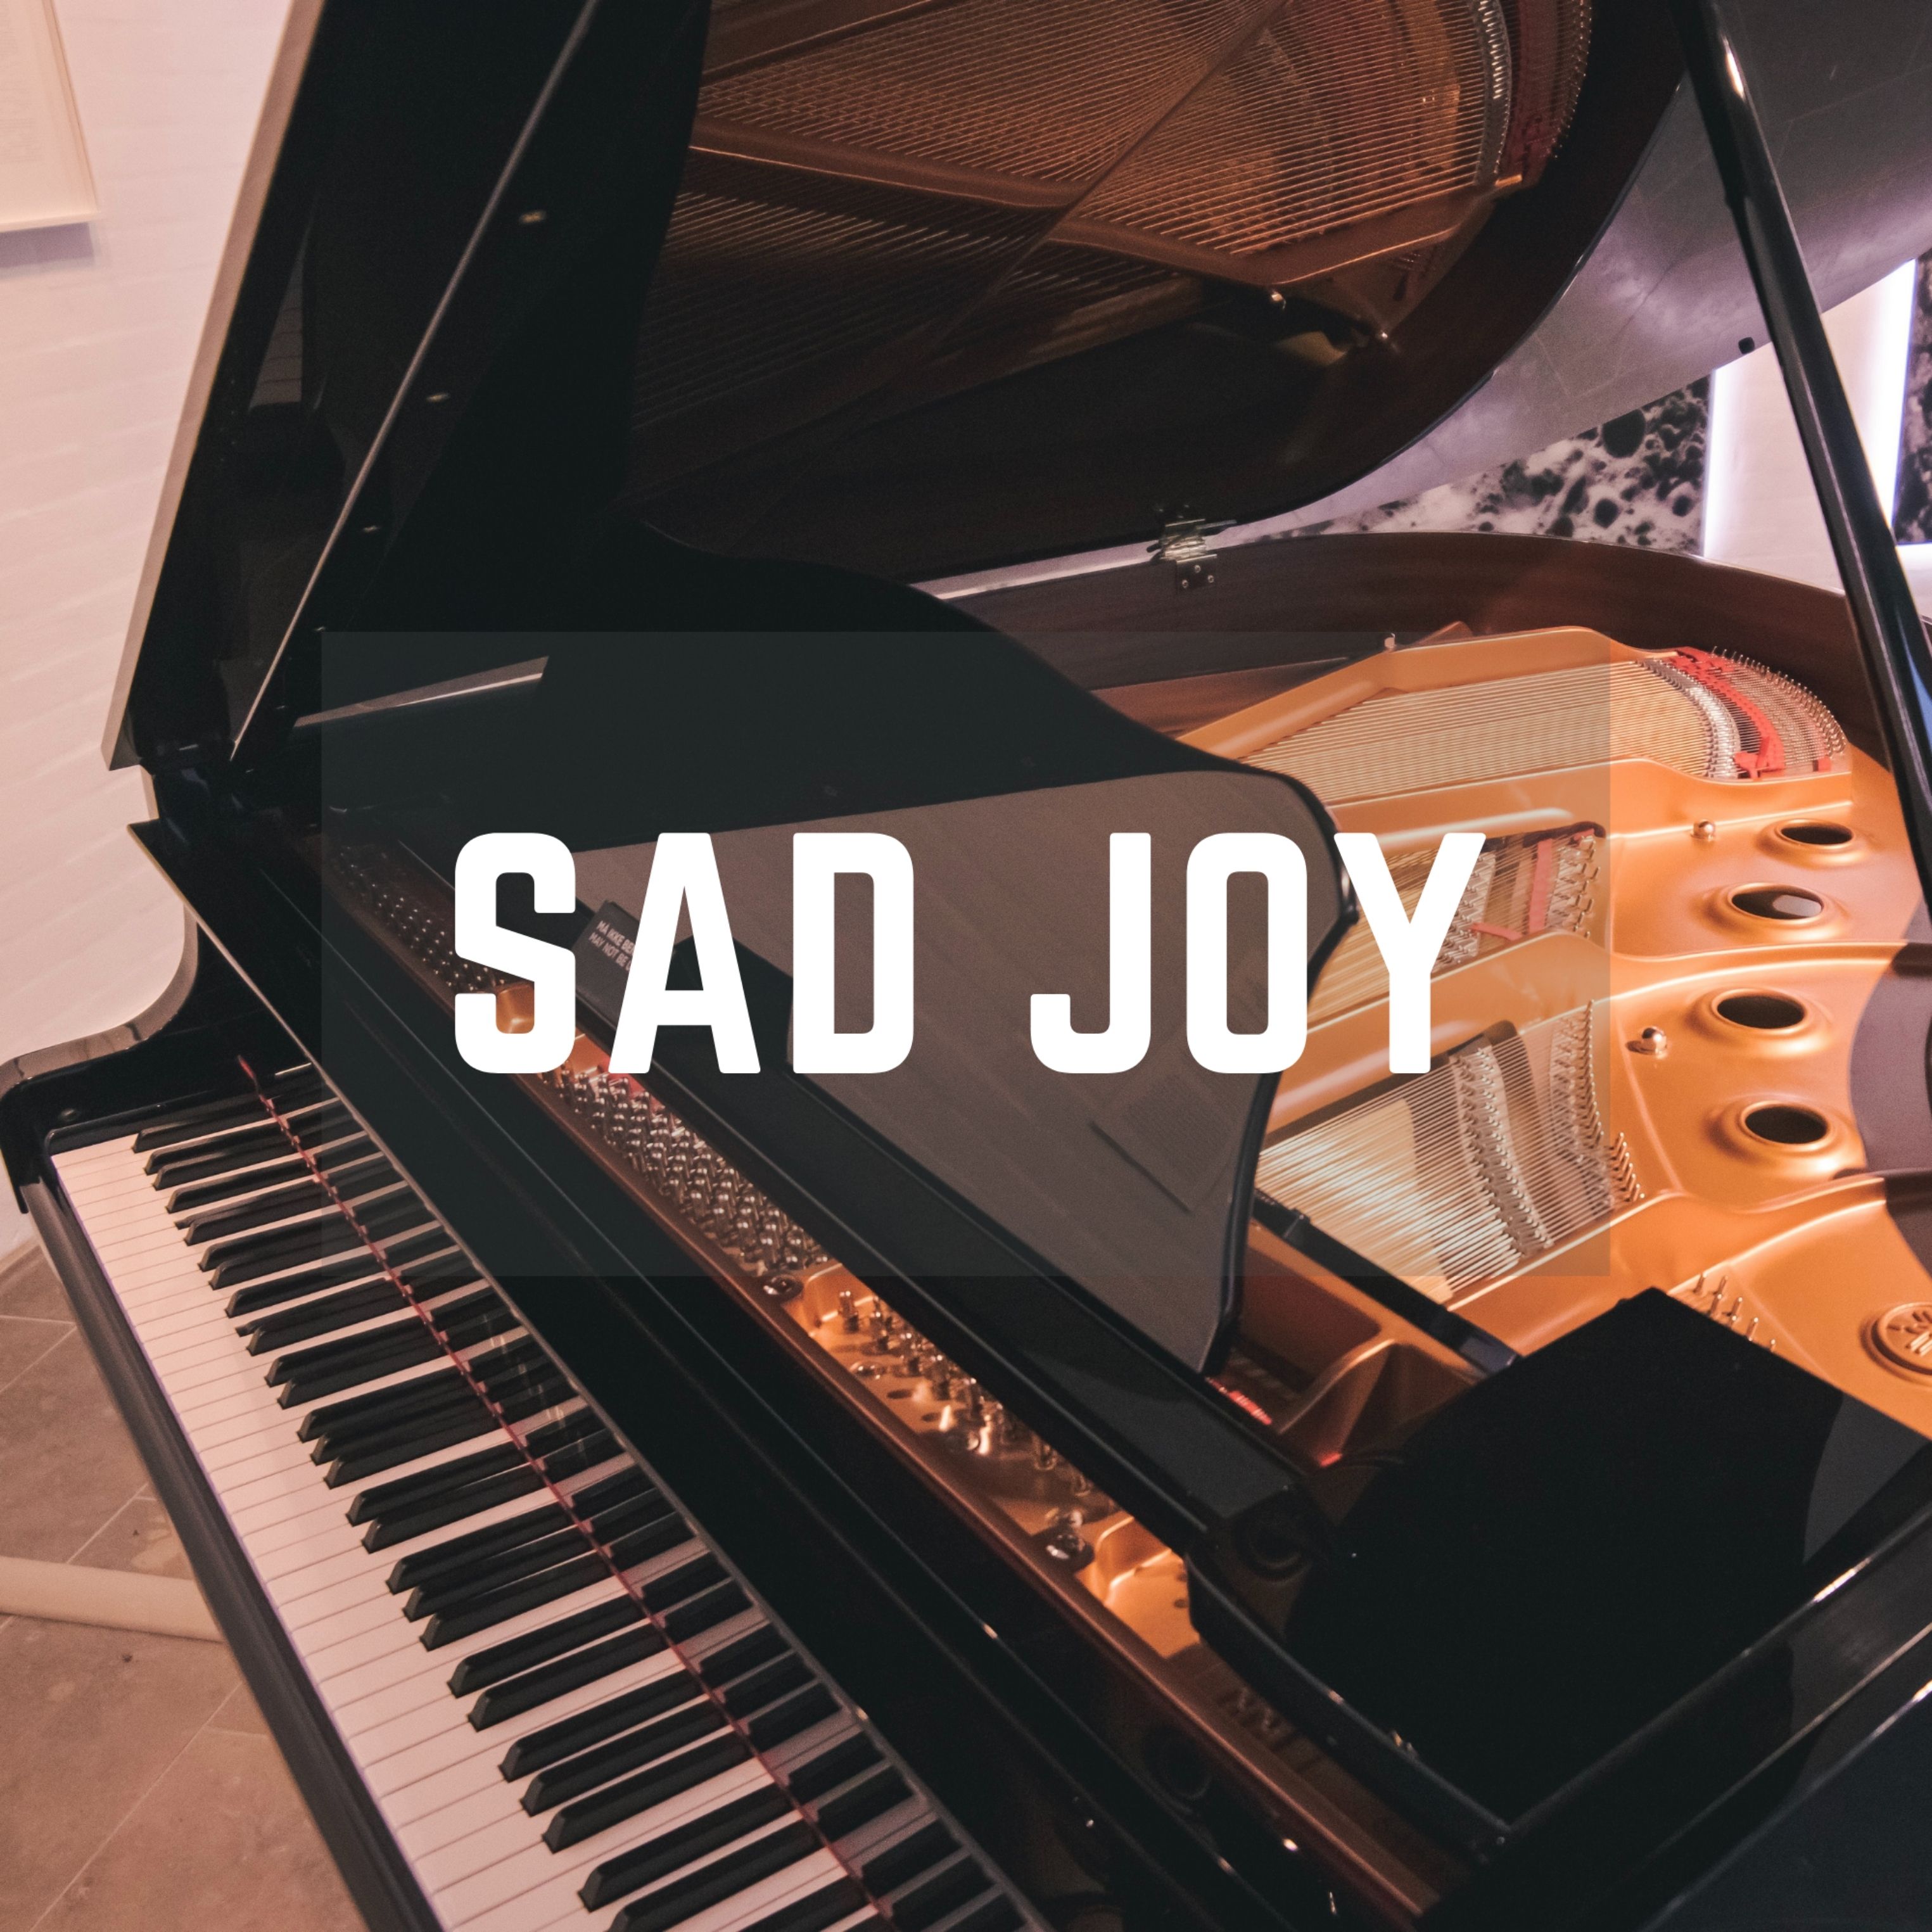 Sad Joy